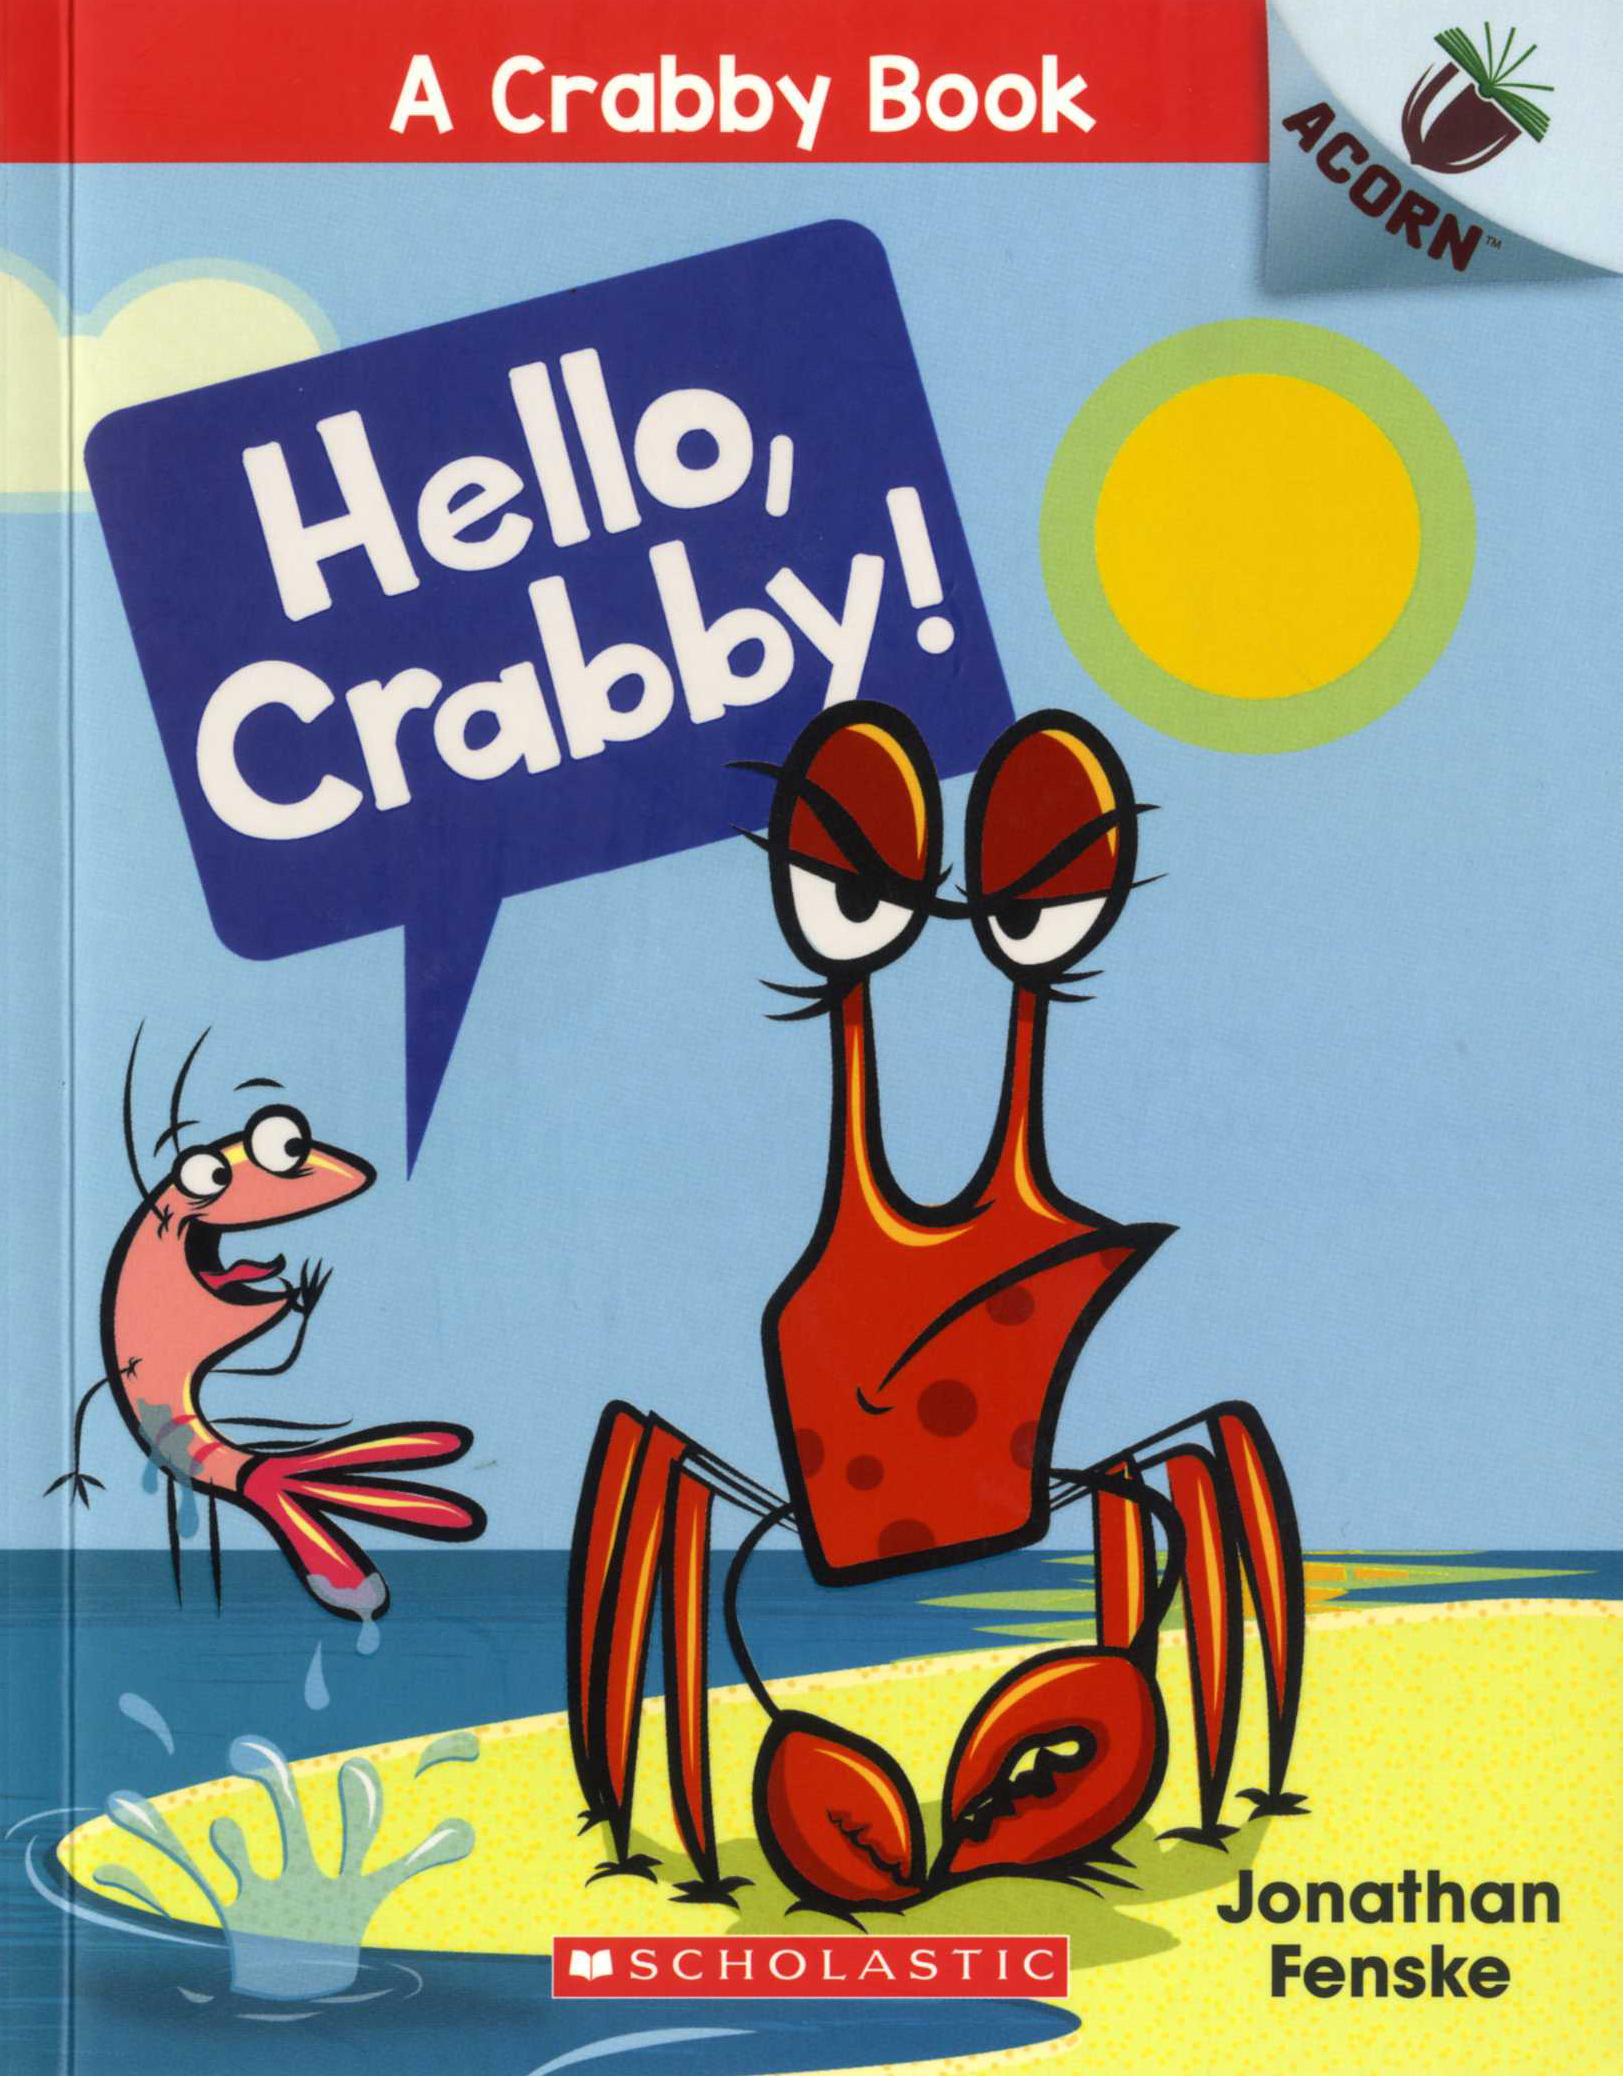 A Crabby Book #1: Hello, Crabby!